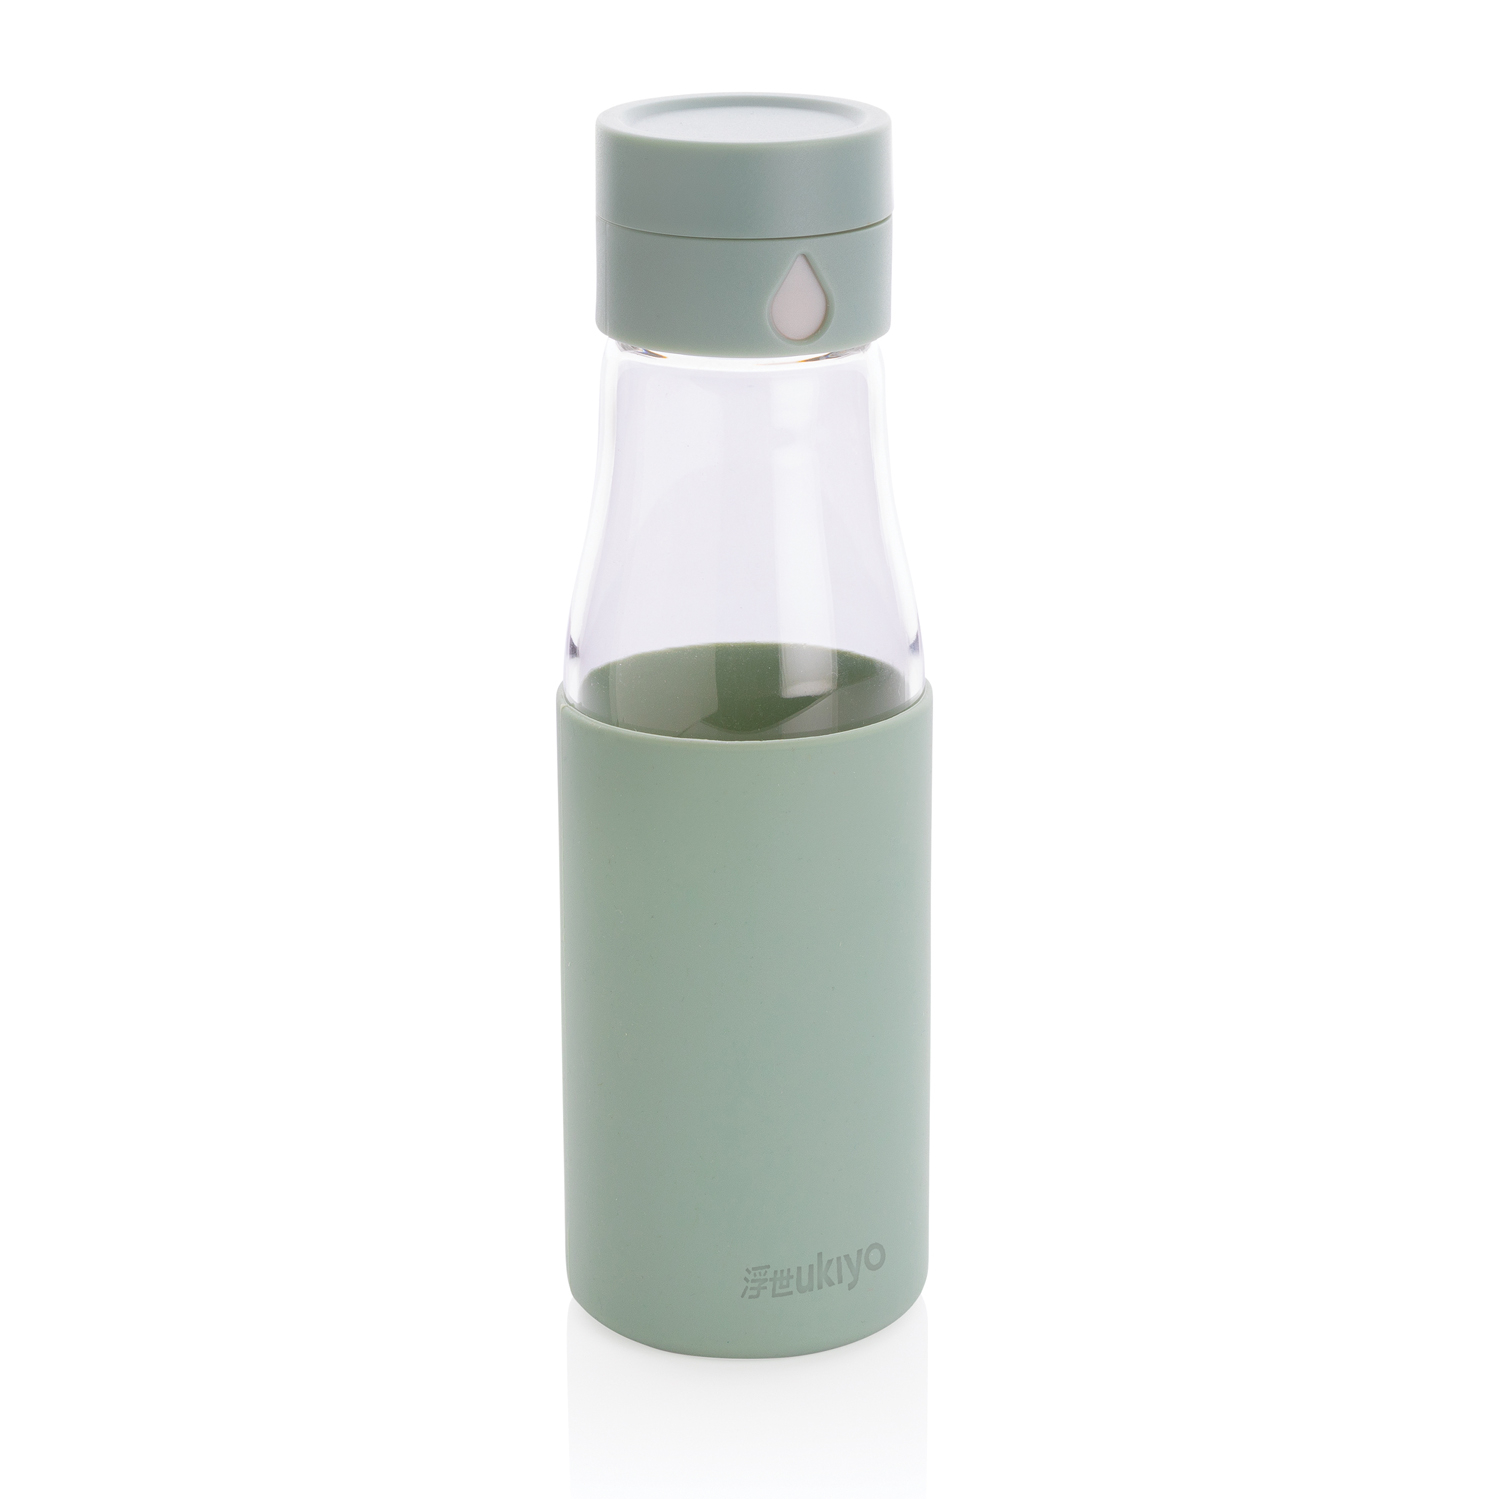 Бутылка стеклянная LAWAS в чехле из натуральной пробки, 500 мл, прозрачный/бежевый